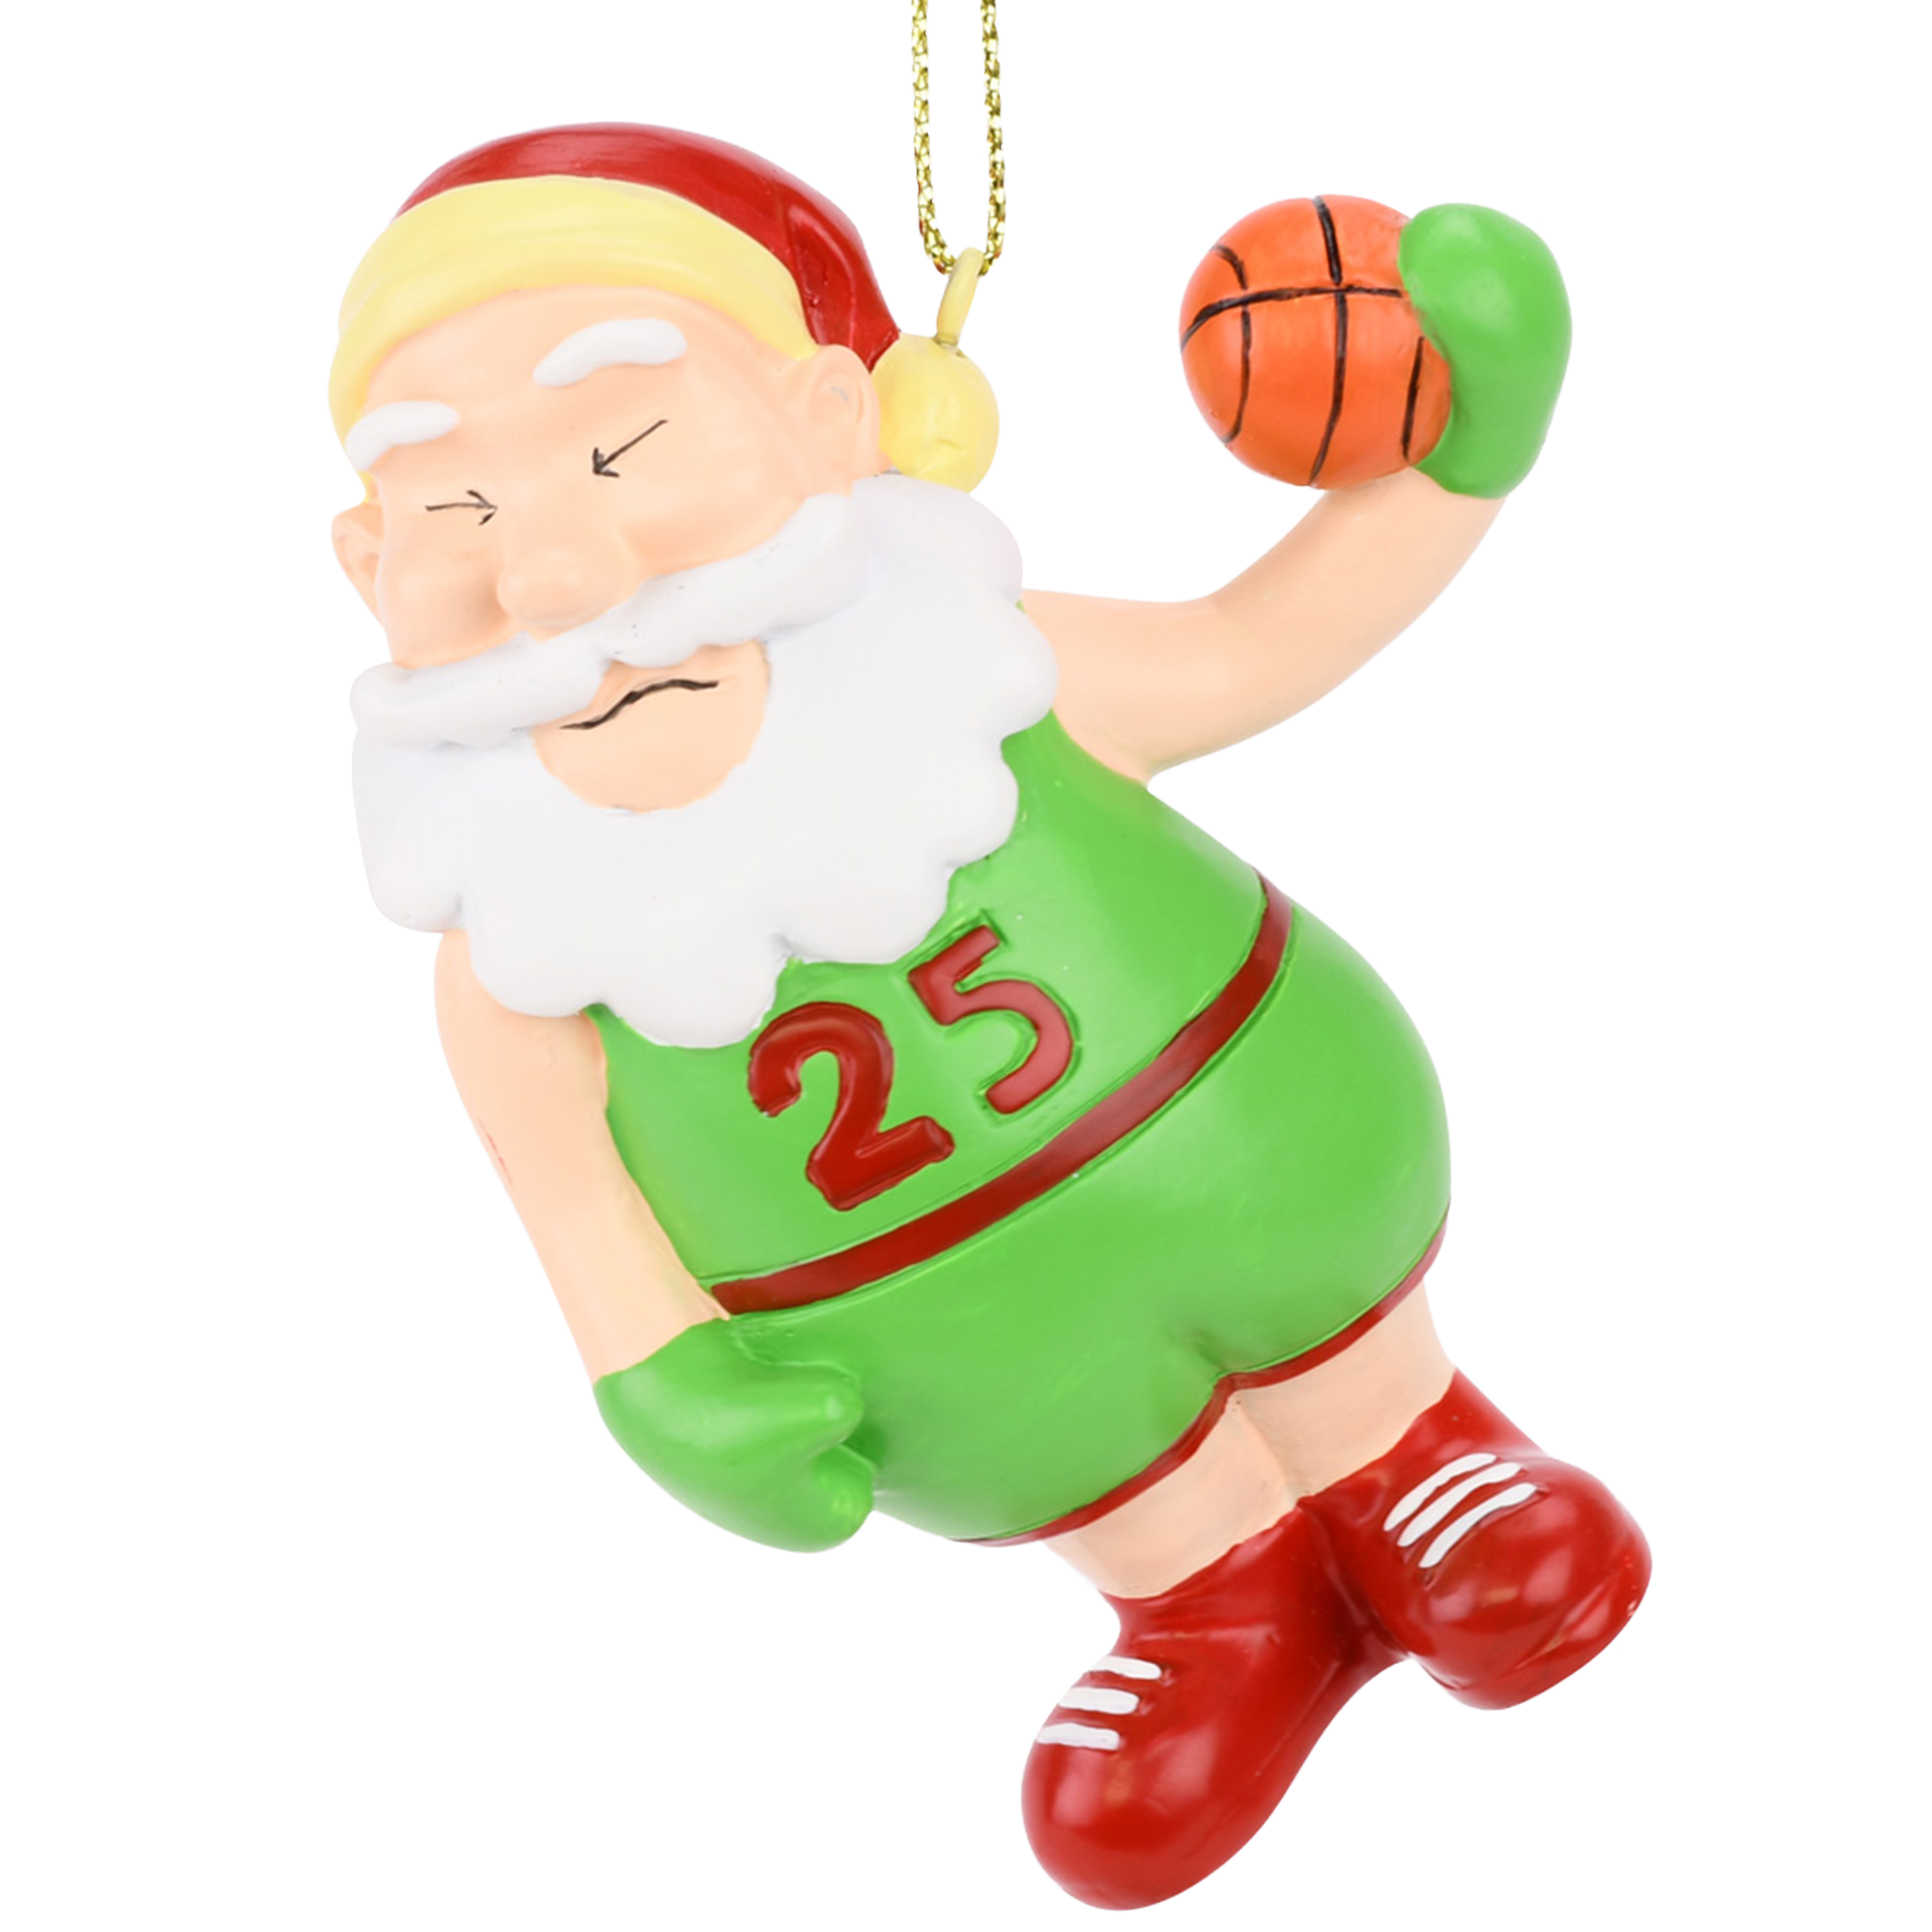 Santa playing basketball